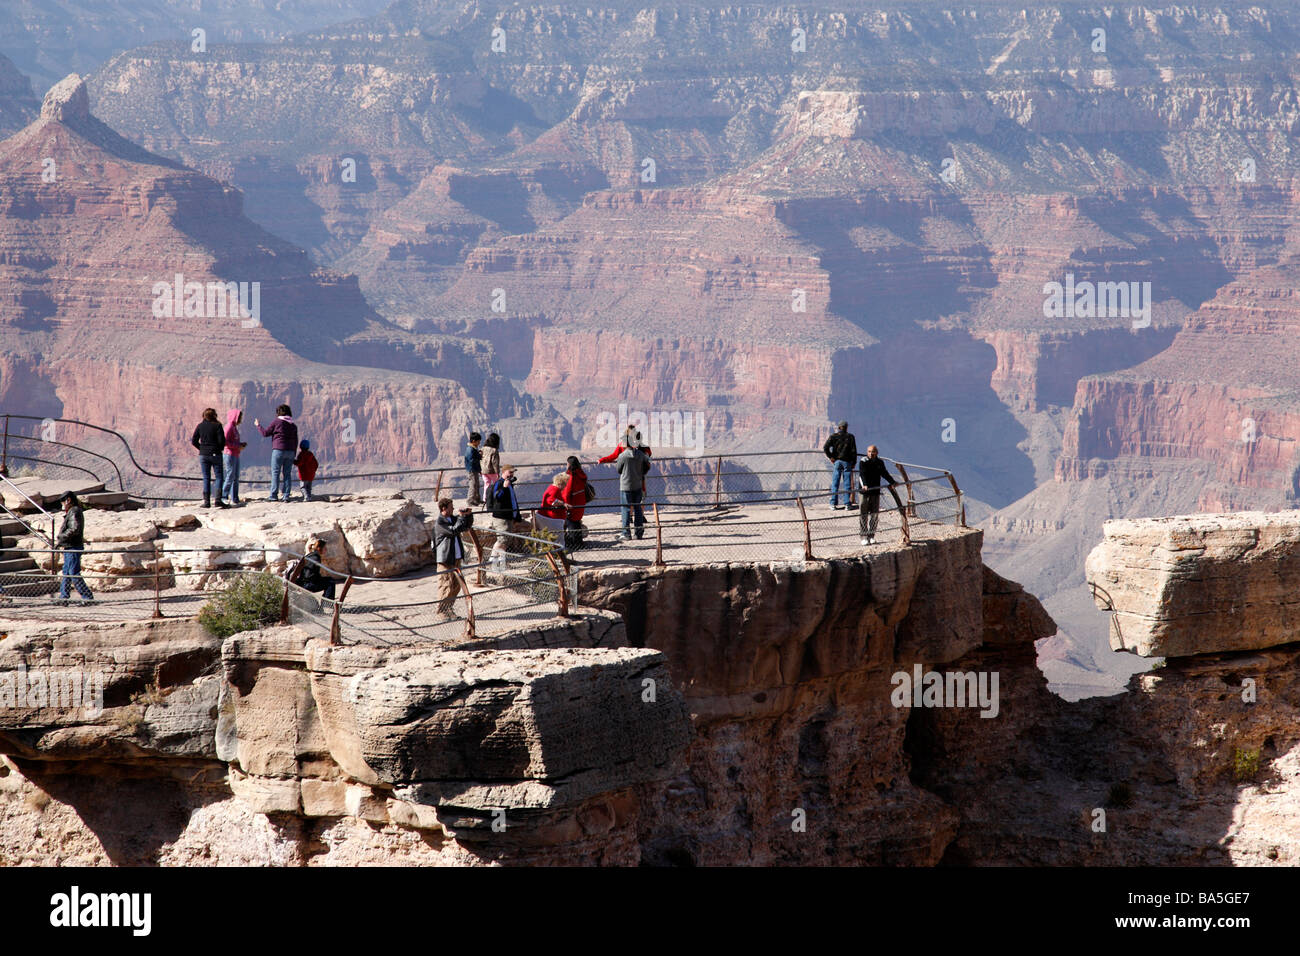 Touristen am Mather Point, einem beliebten Aussichtspunkten über den Grand Canyon South, rim Nationalpark Arizona usa Stockfoto